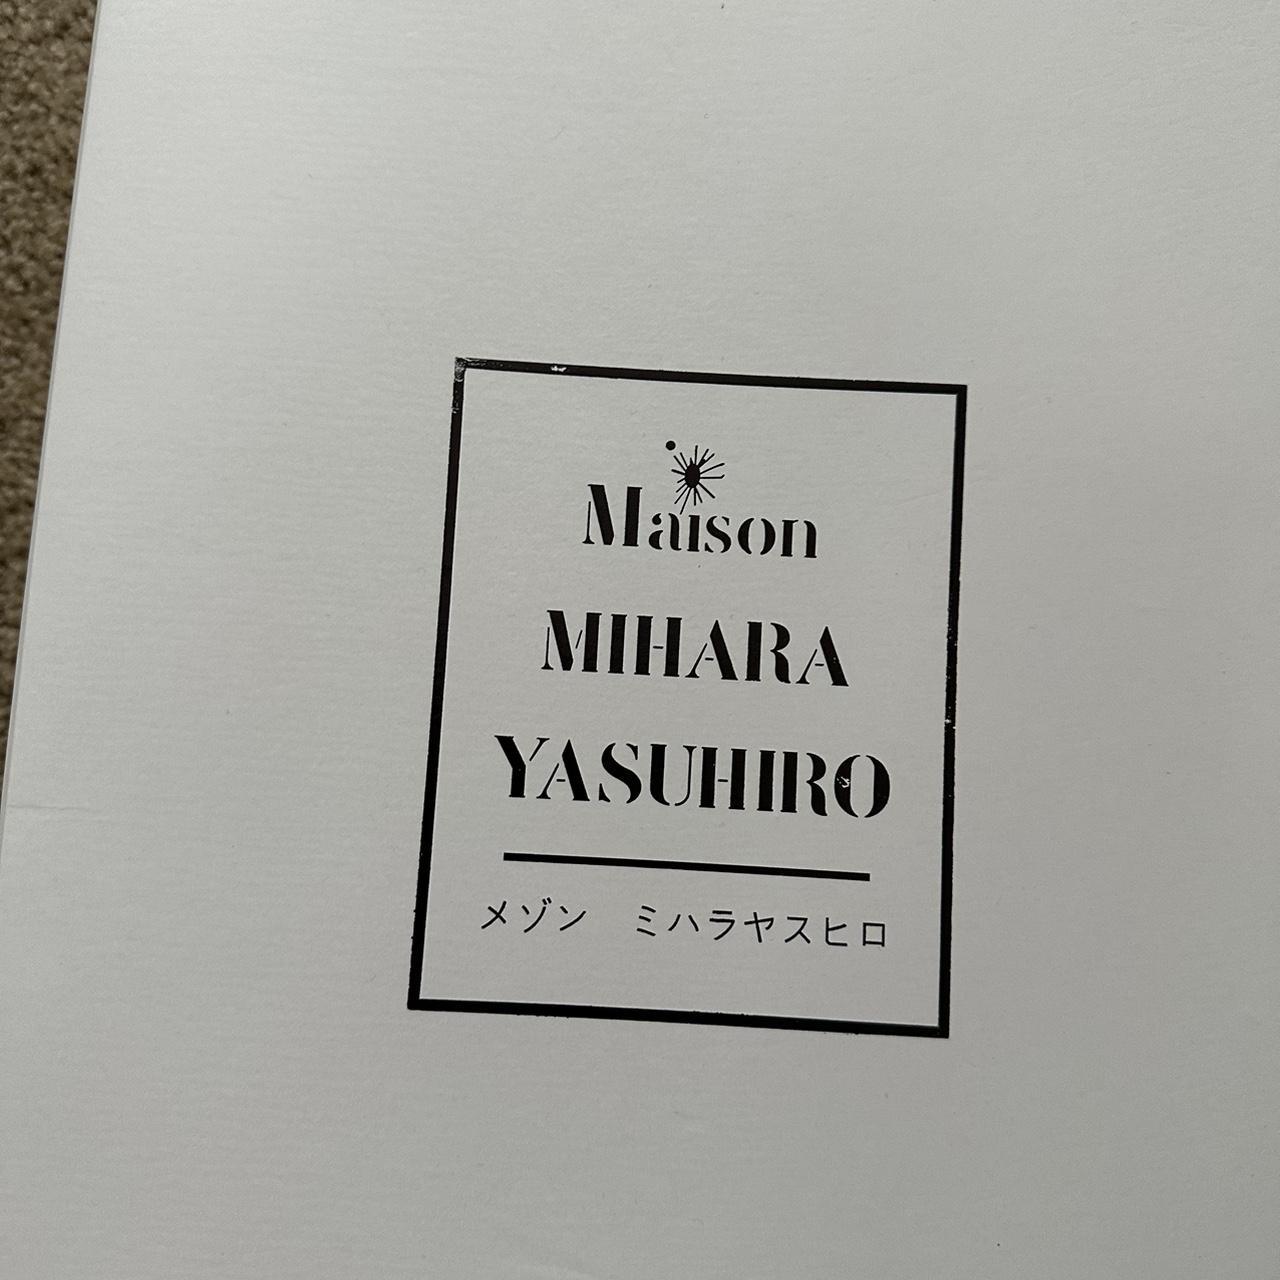 Maison Mihara Yasuhiro Men's Black and White Trainers (5)